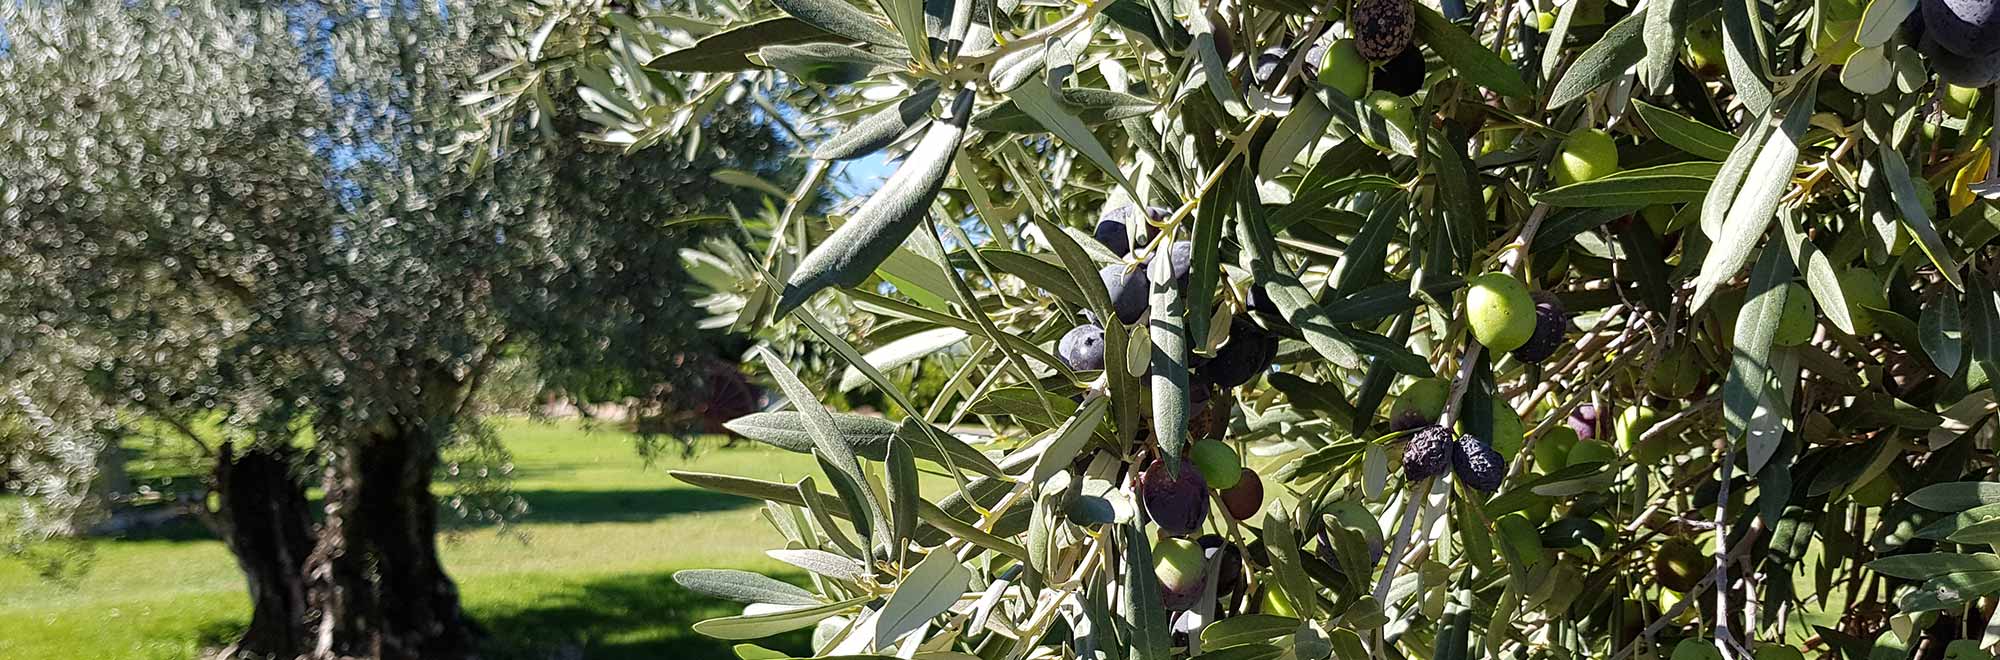 Aceite de oliva orgánico: características y beneficios